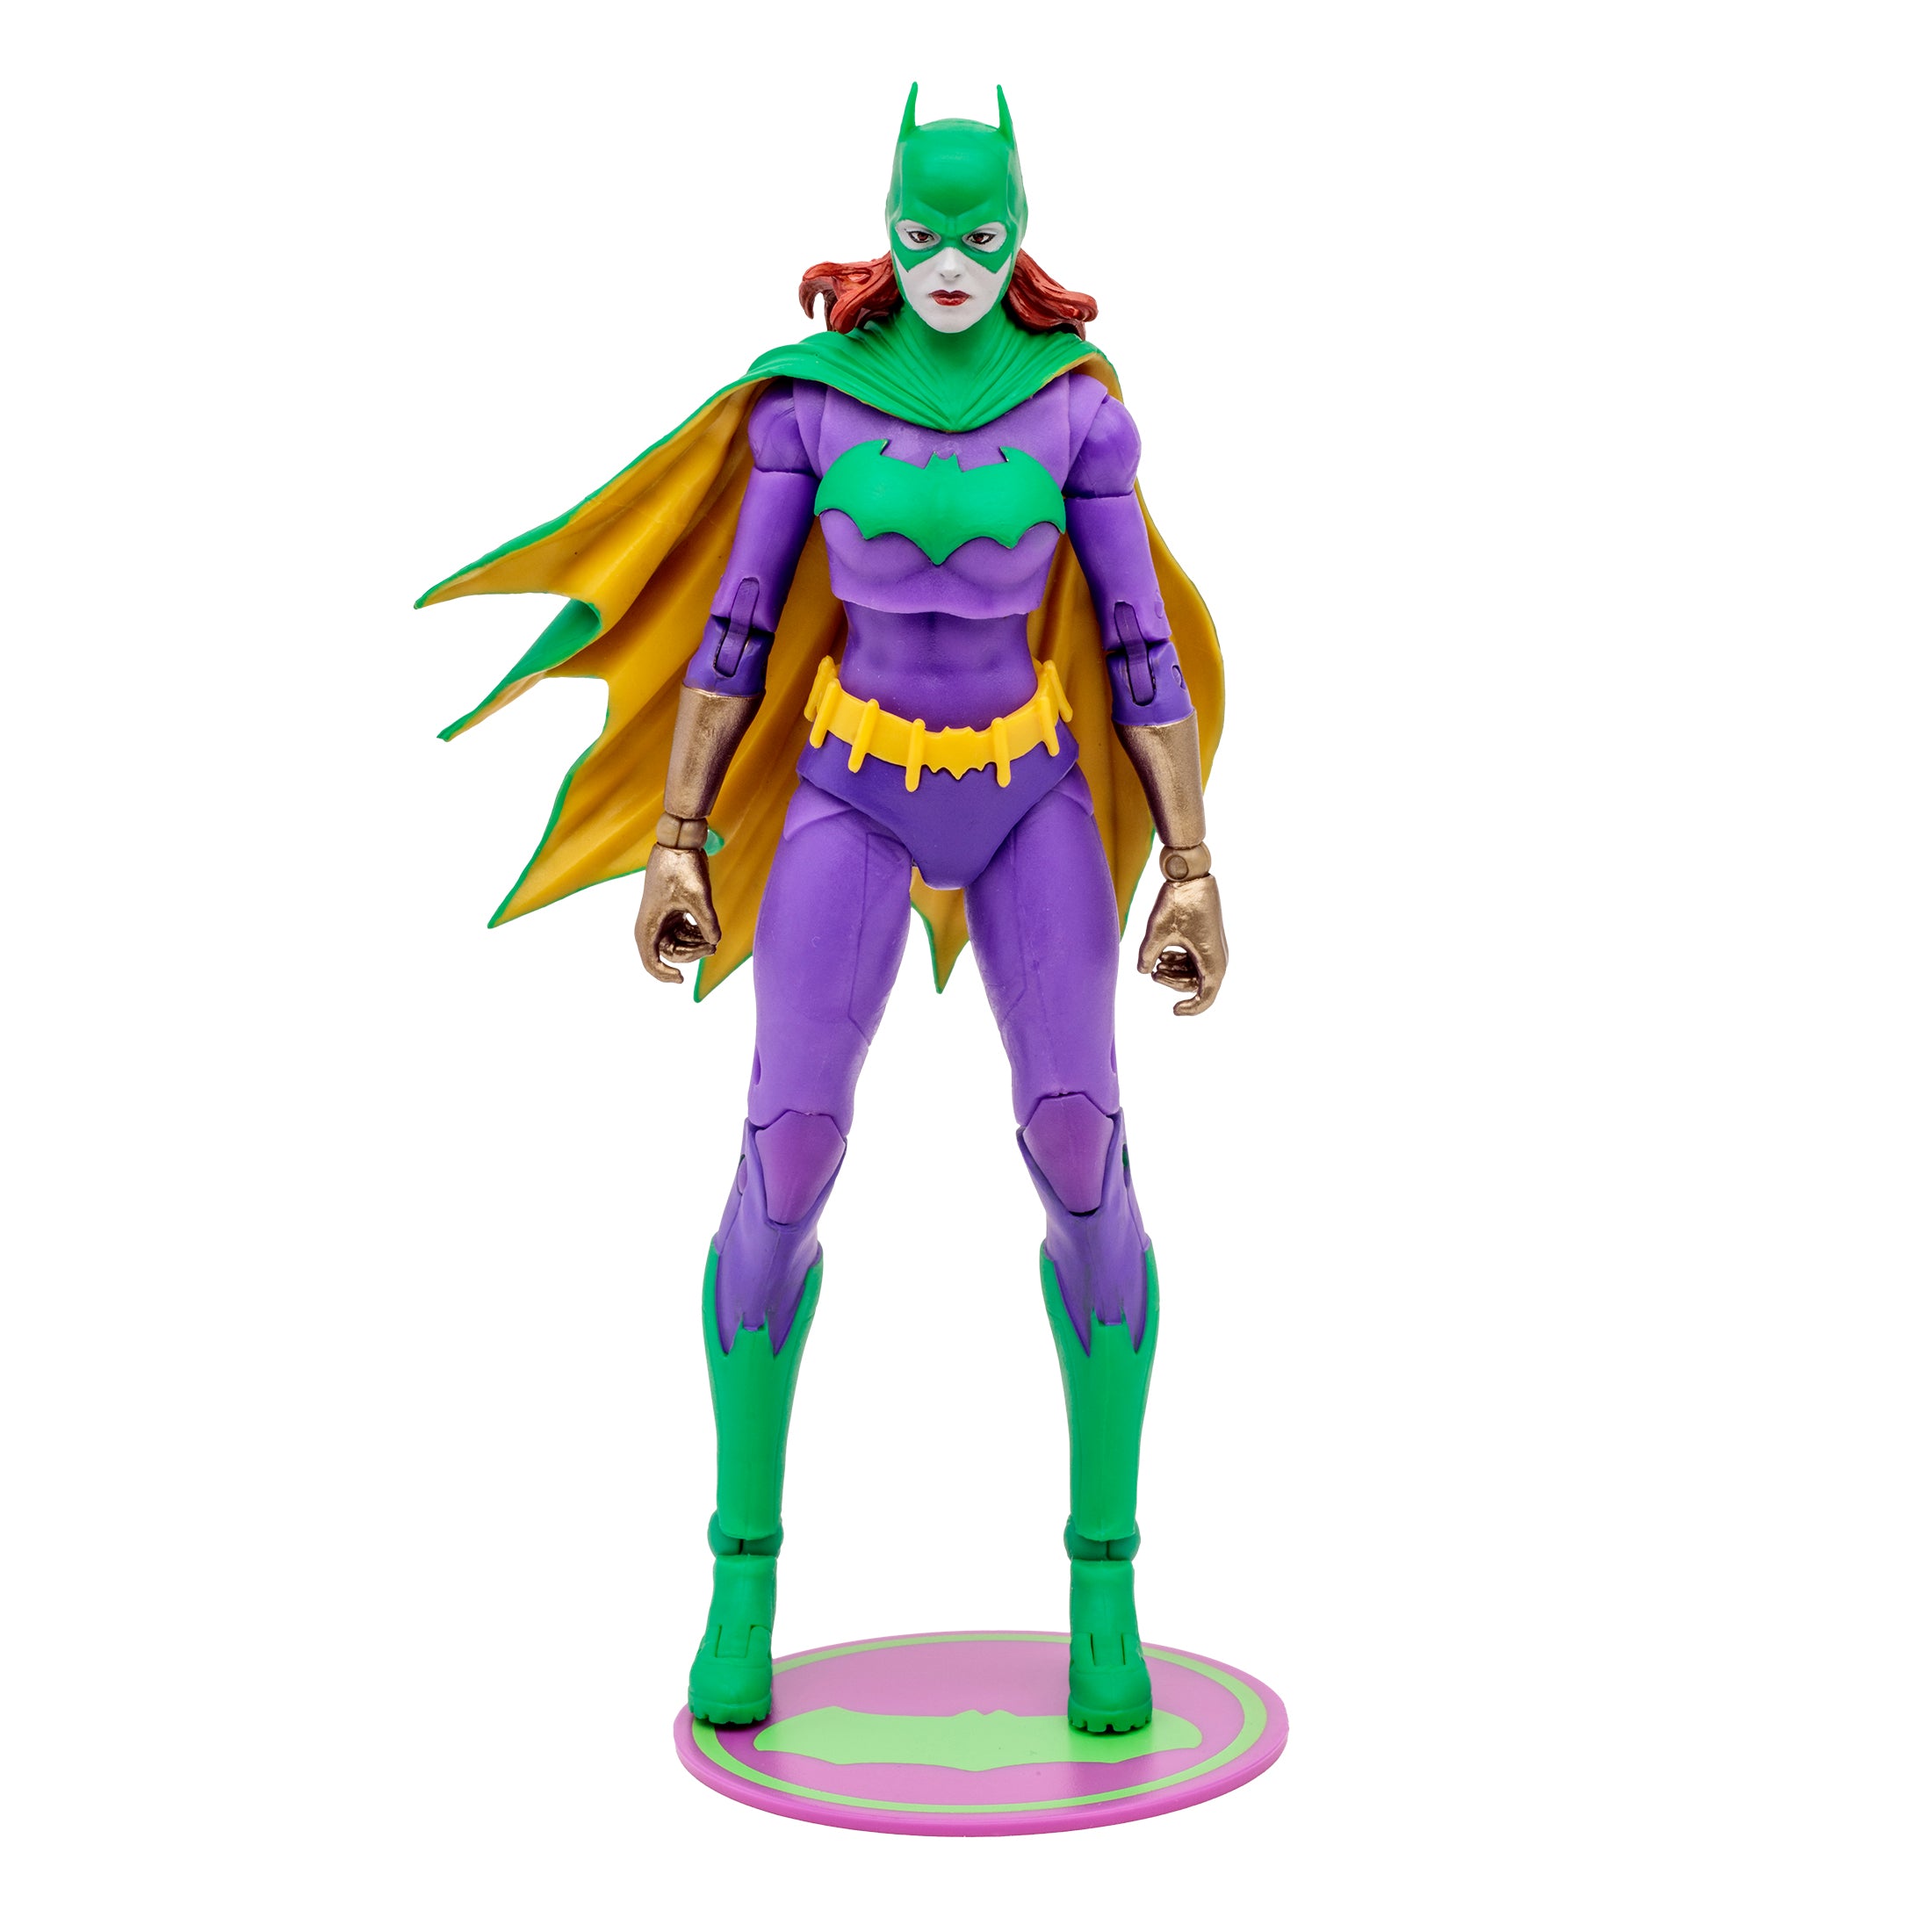 McFarlane Figura de Accion: Dc Comics Batman Three Jokers - Batgirl Jokerizada Gold Label 7 Pulgadas